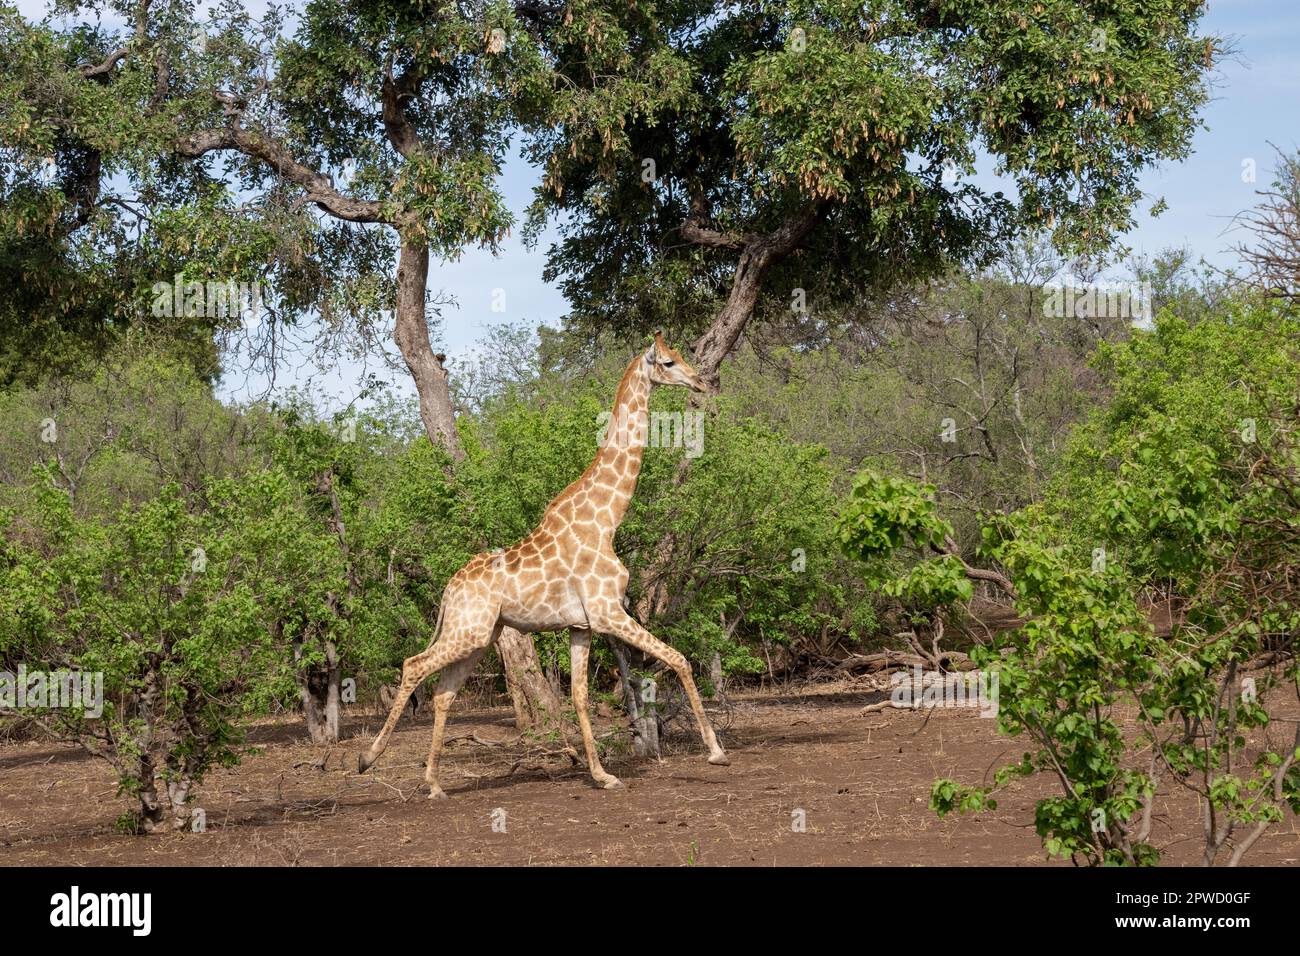 Giraffe Running through the Brush in Botswana Stock Photo